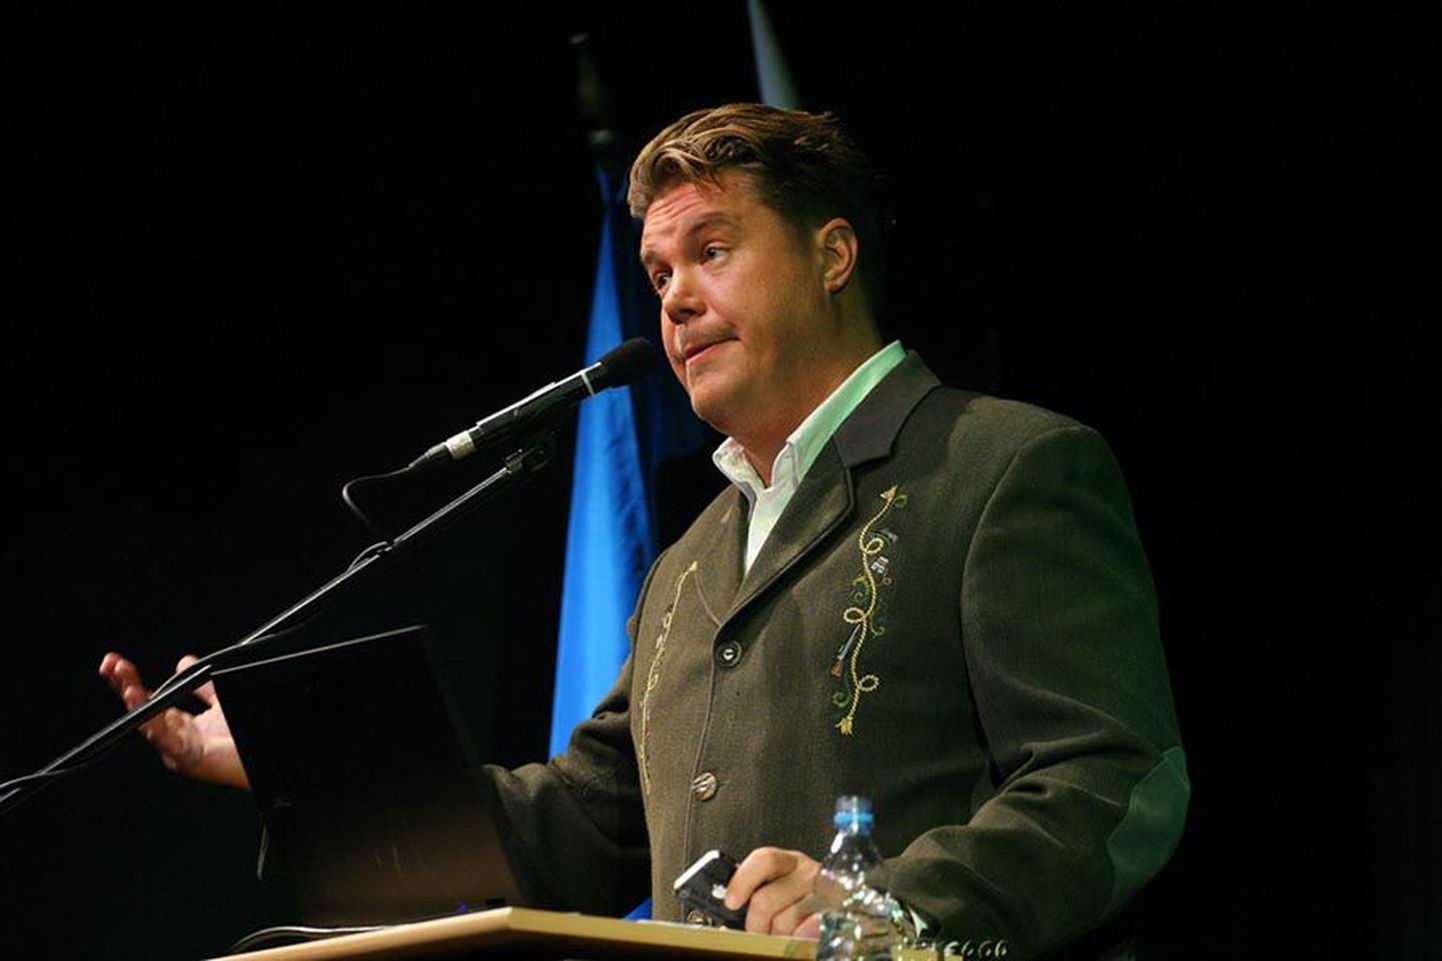 Nooremleitnant Hannes Võrno avaldas arvamust, et iga kooli õppekavva peaksid kuuluma riigikaitse- ja usundiõpetus.